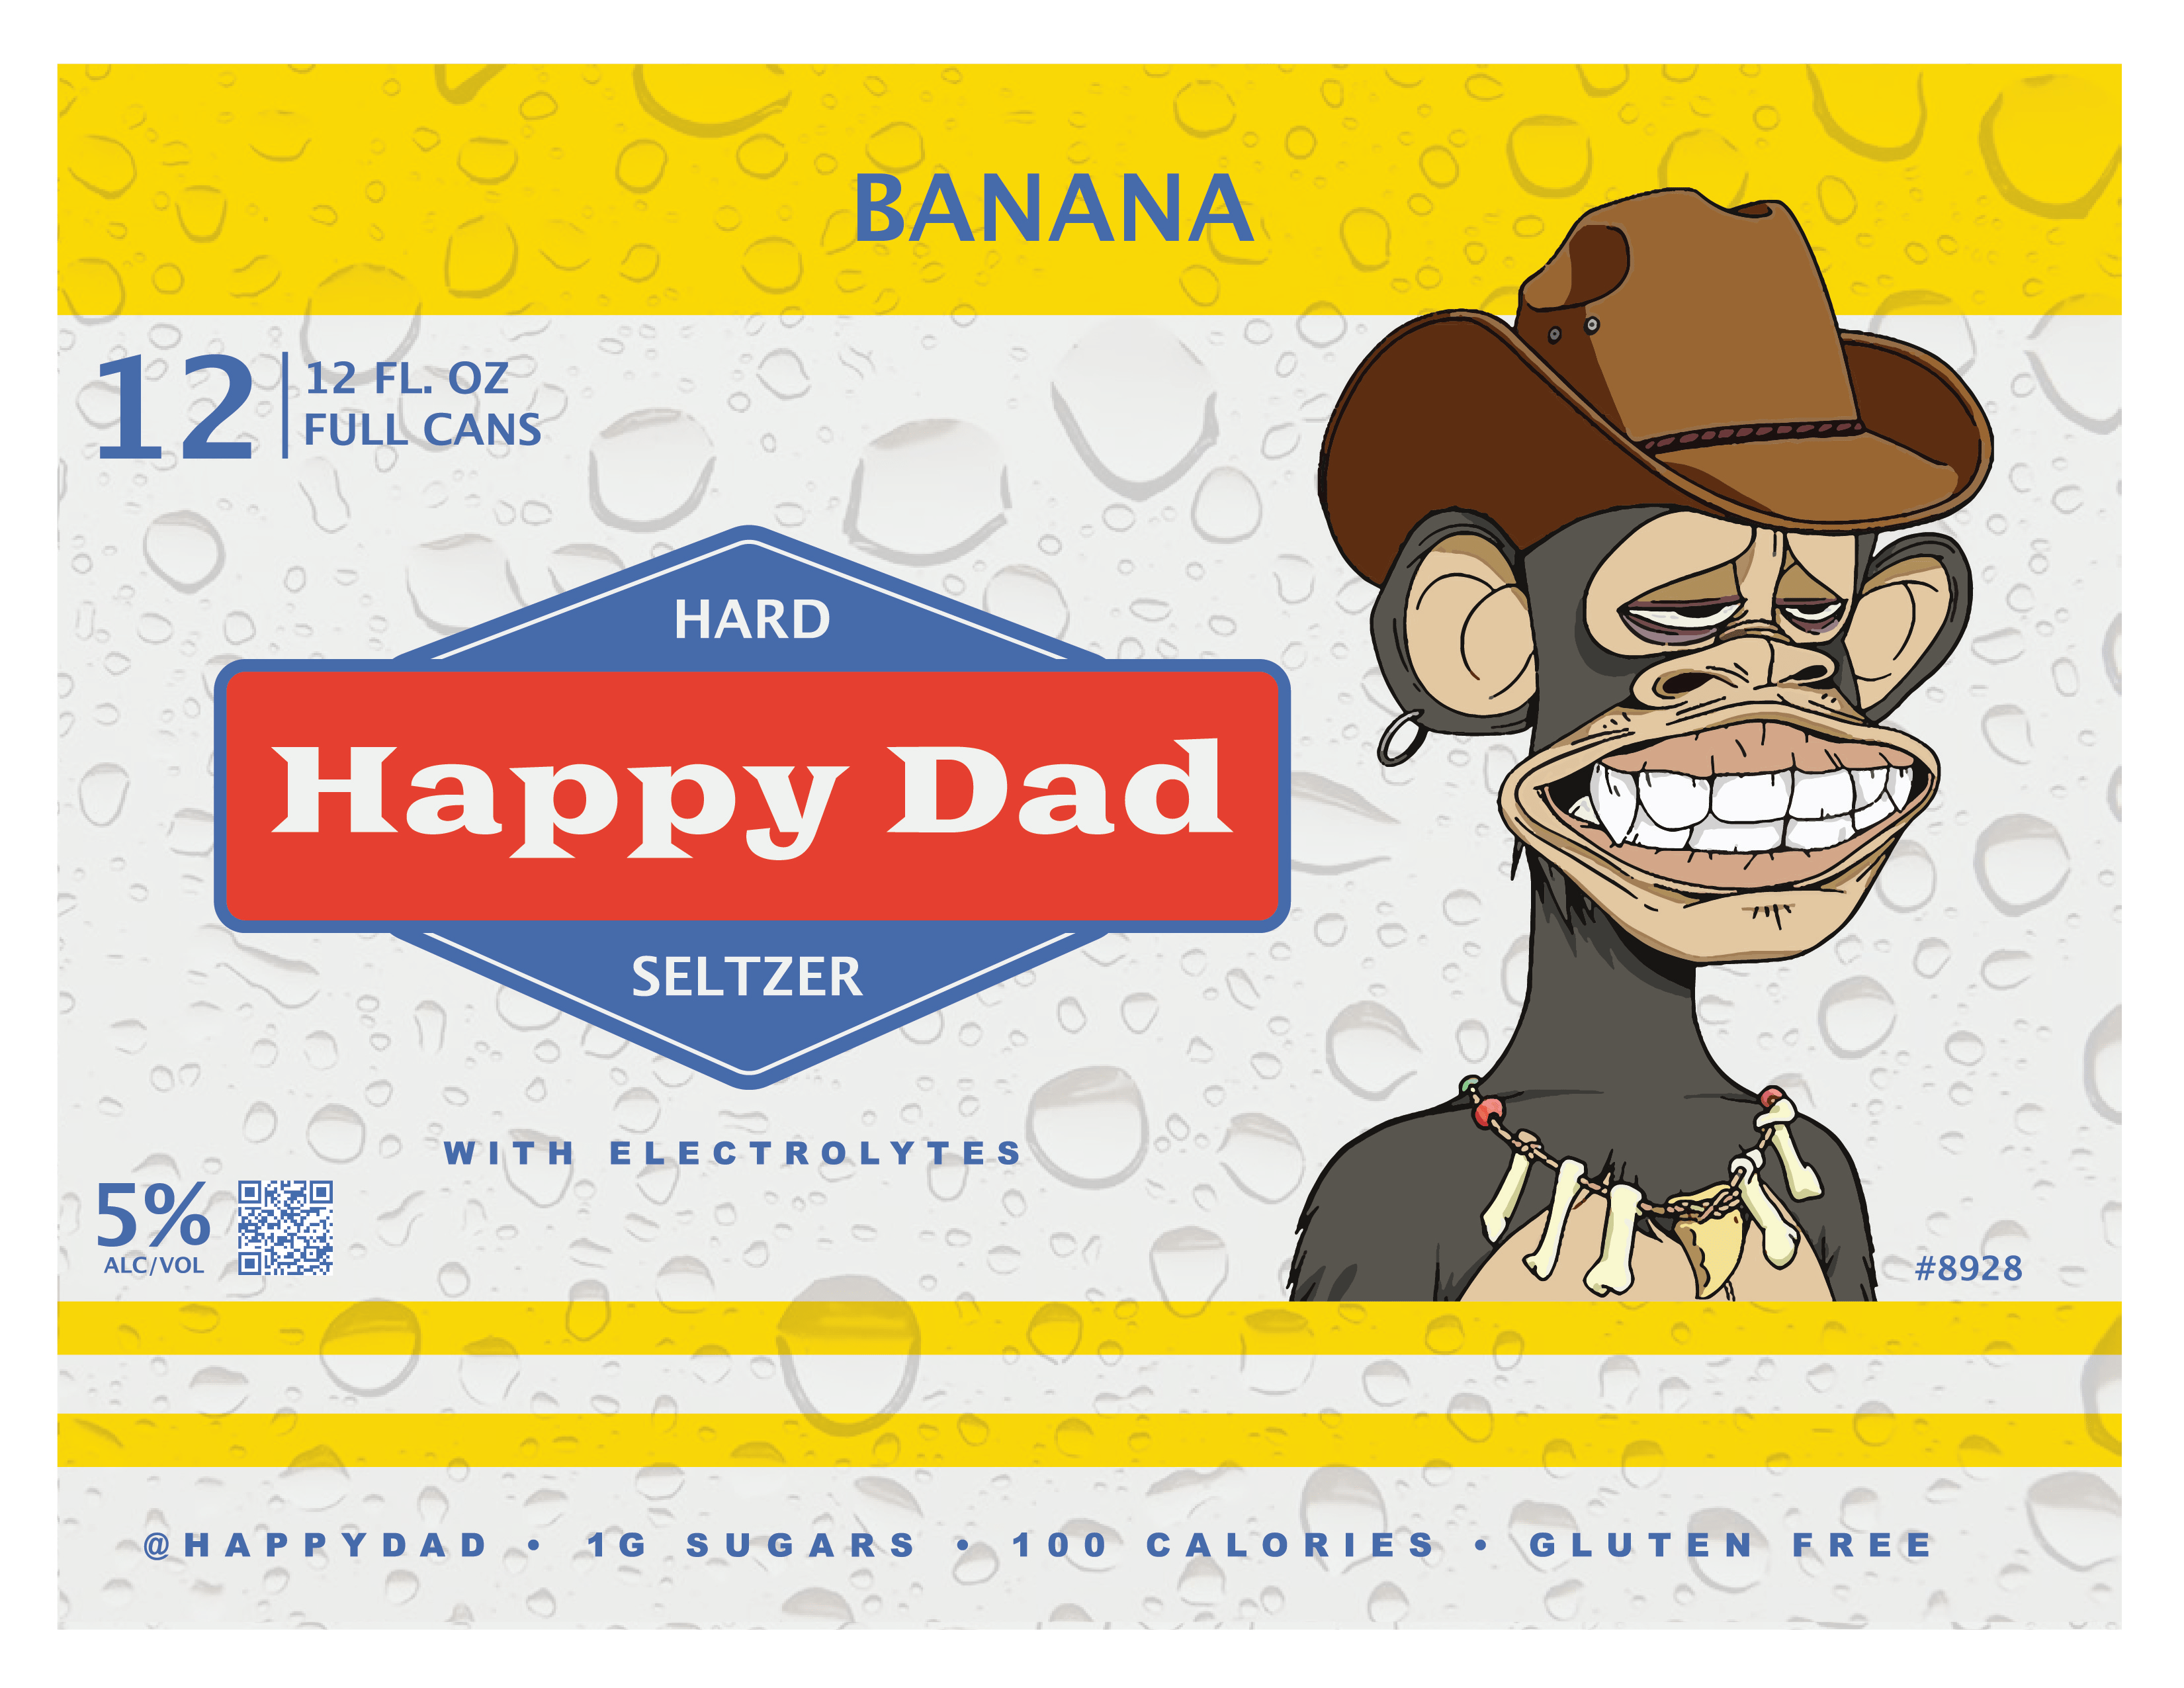 Happy Dad Hard Seltzer Banana - Barbank